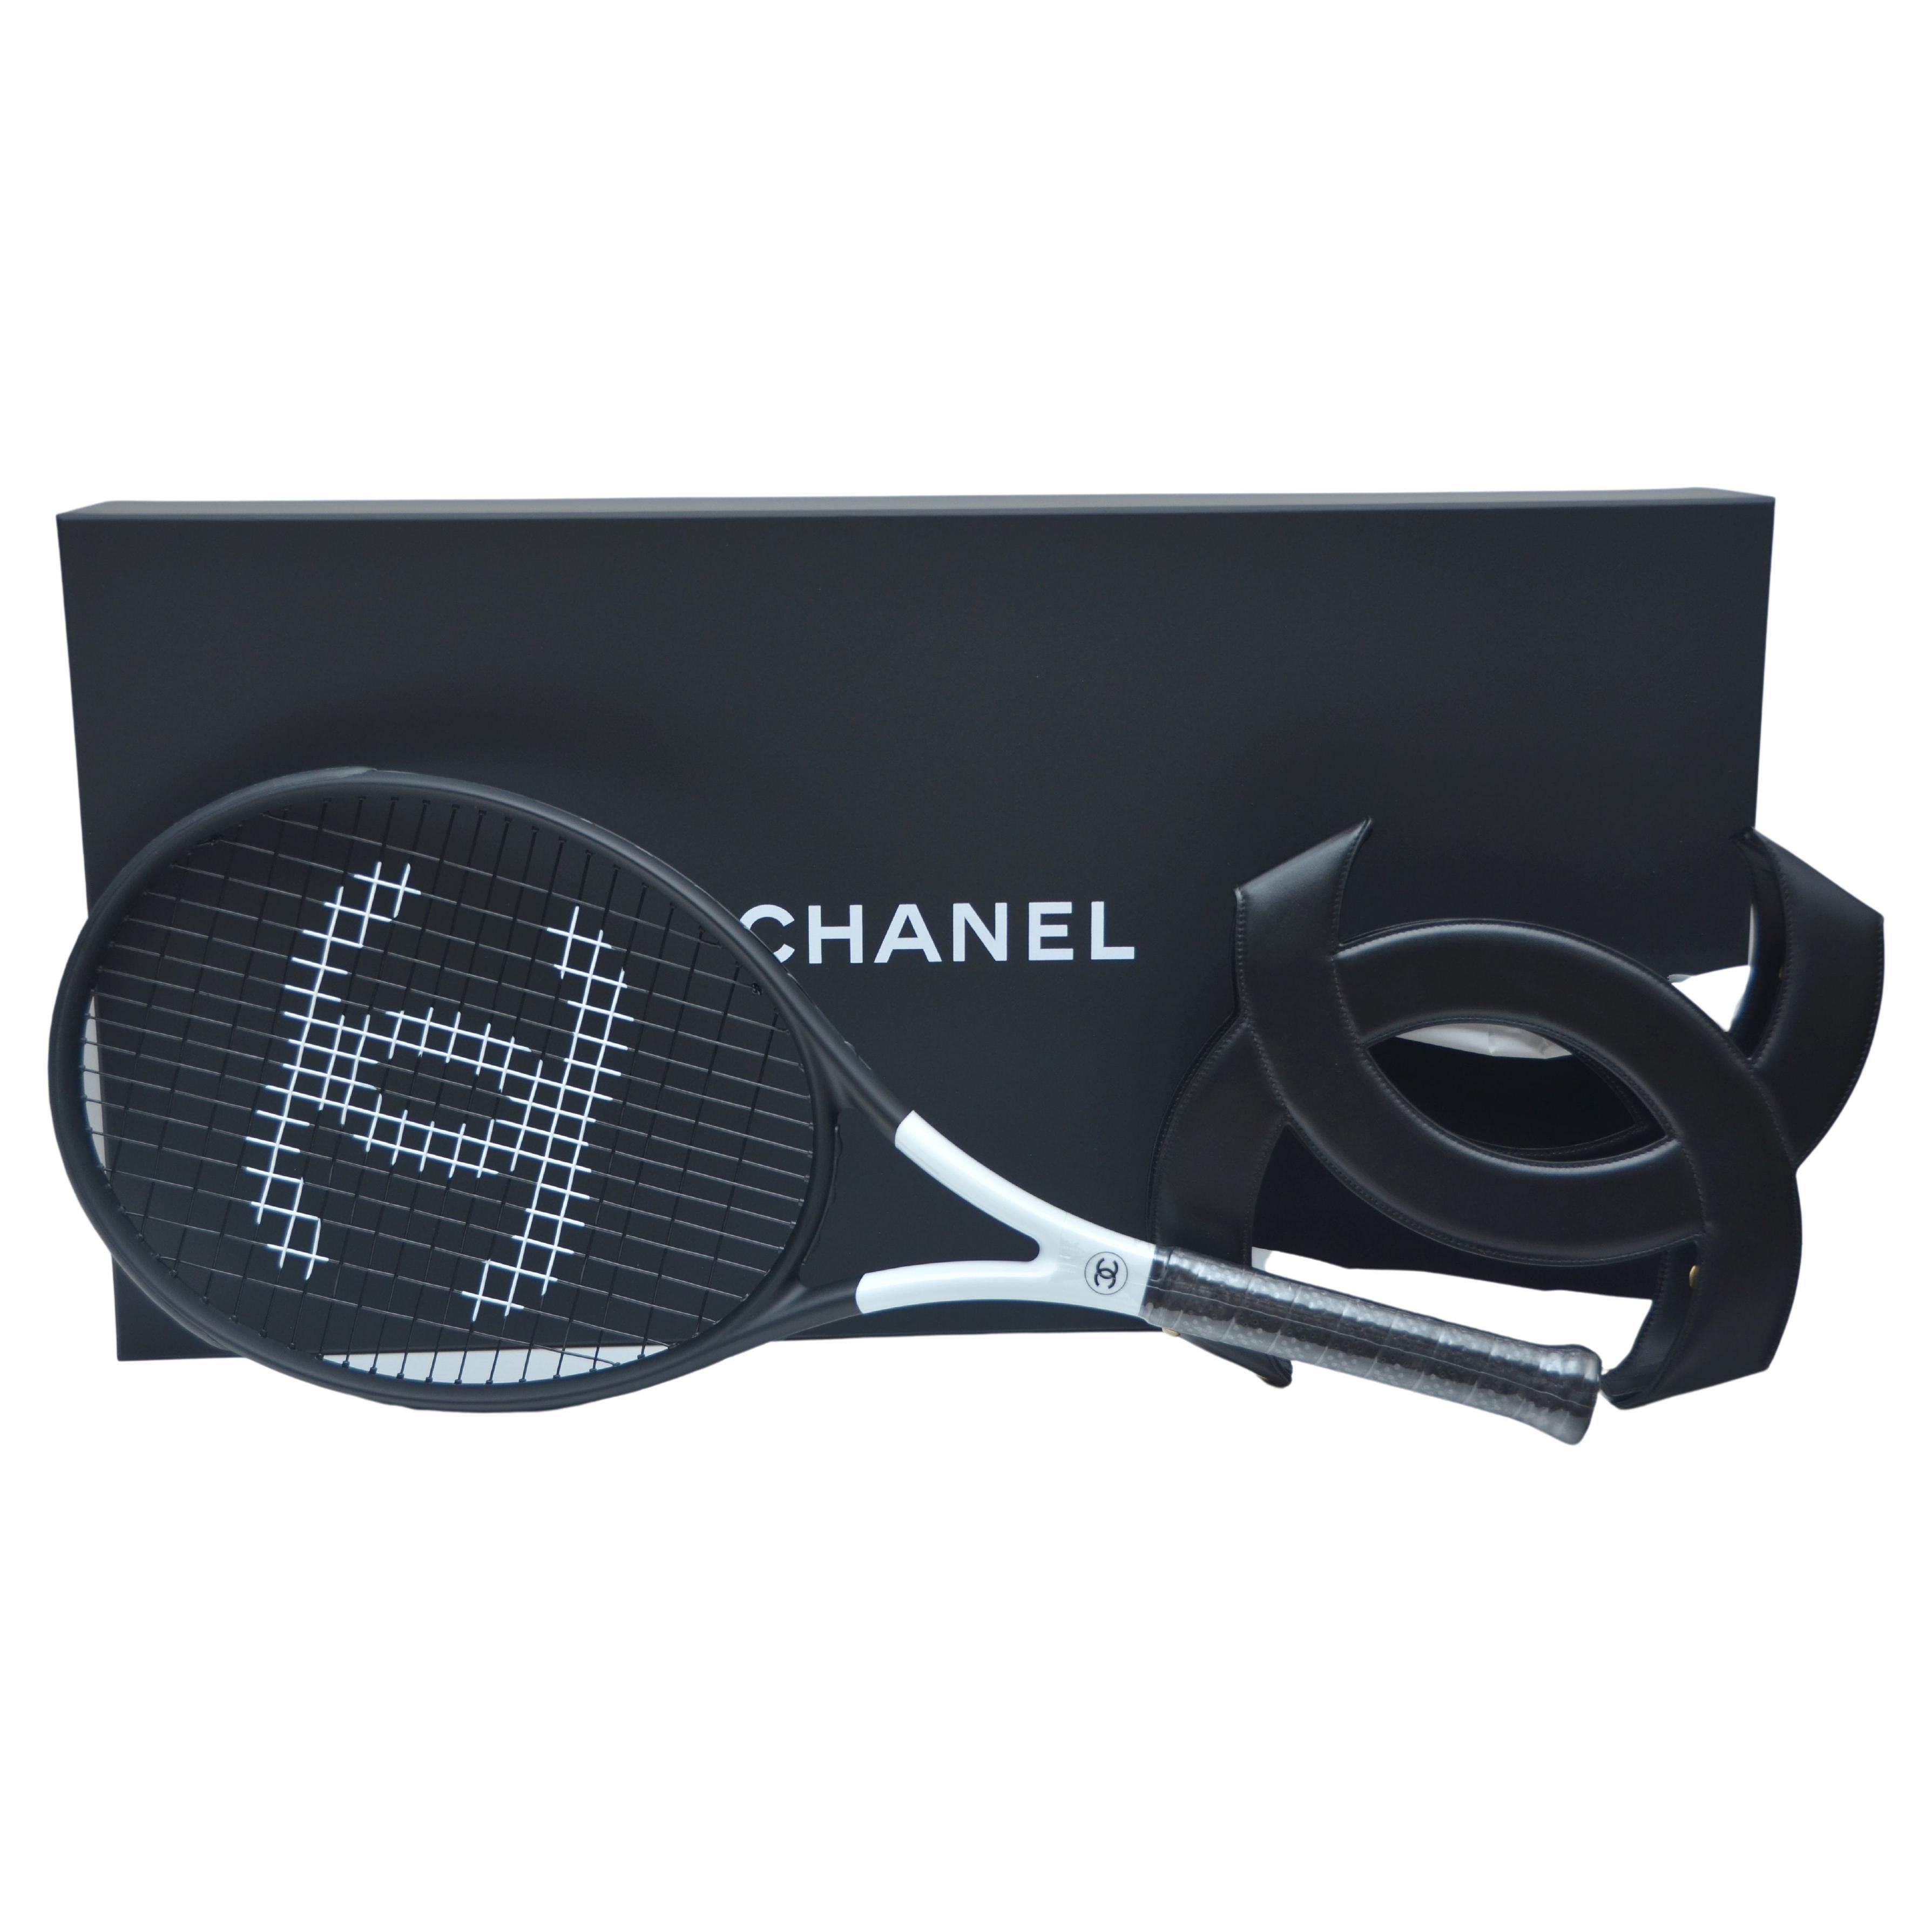 Chanel Tennis Bag - 5 For Sale on 1stDibs